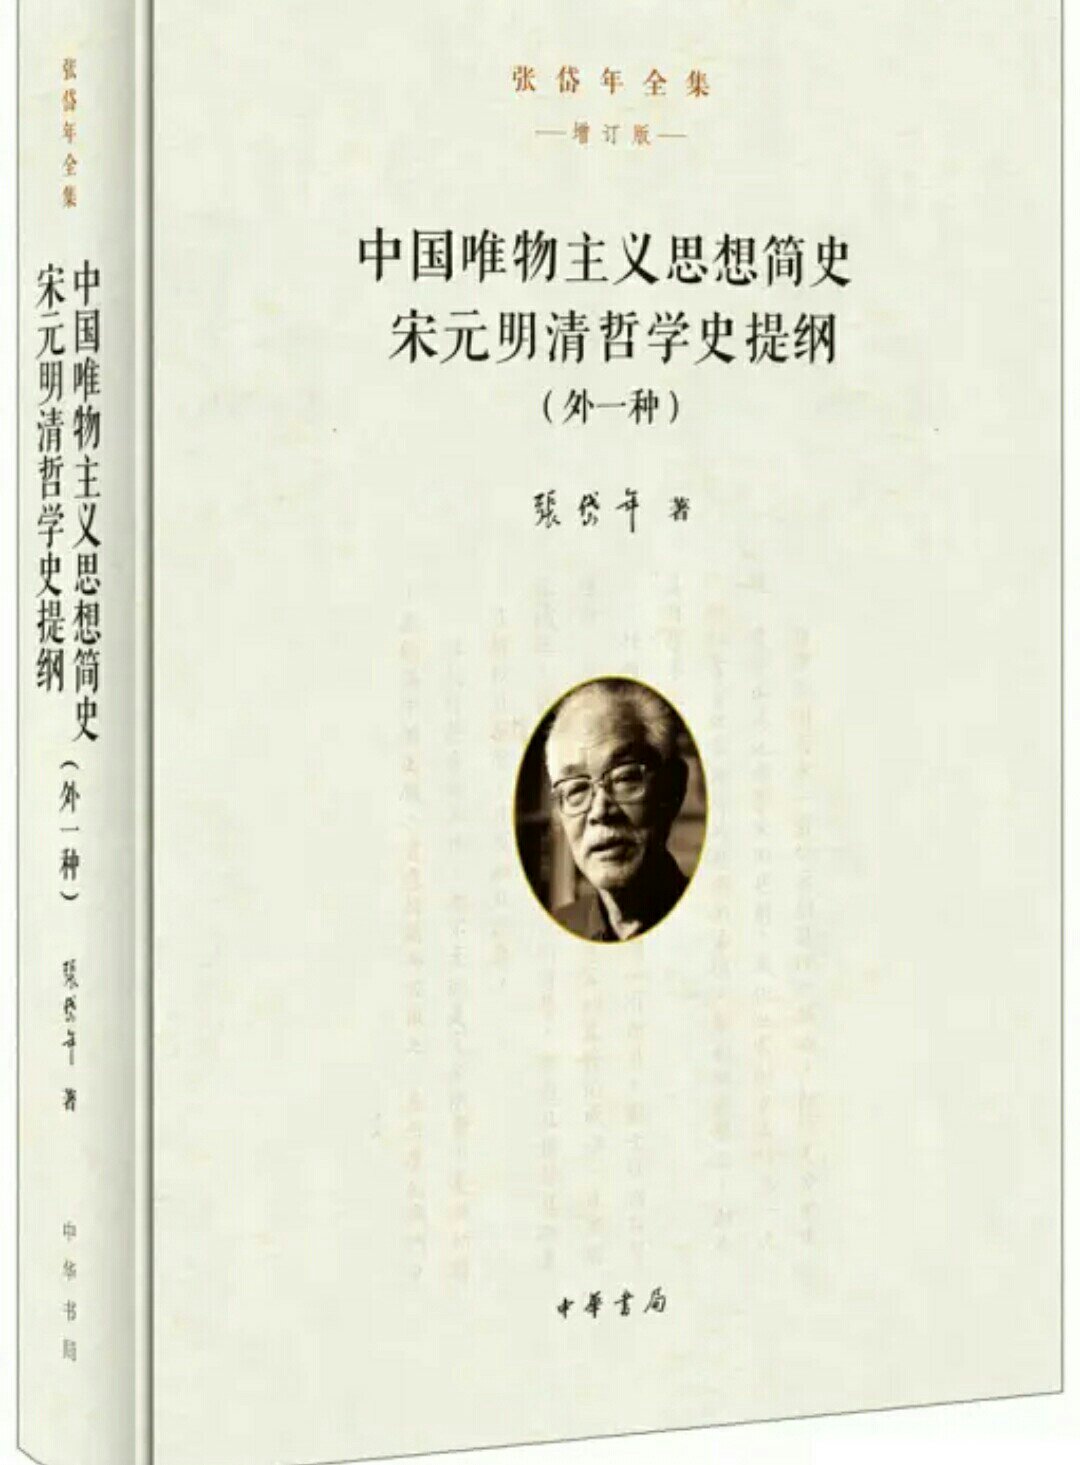 张岱年的学术研究主要分三个方面：一是中国哲学史的阐释；二是哲学问题的探索；三是文化问题的研讨。在不同的时期，各有不同侧重。